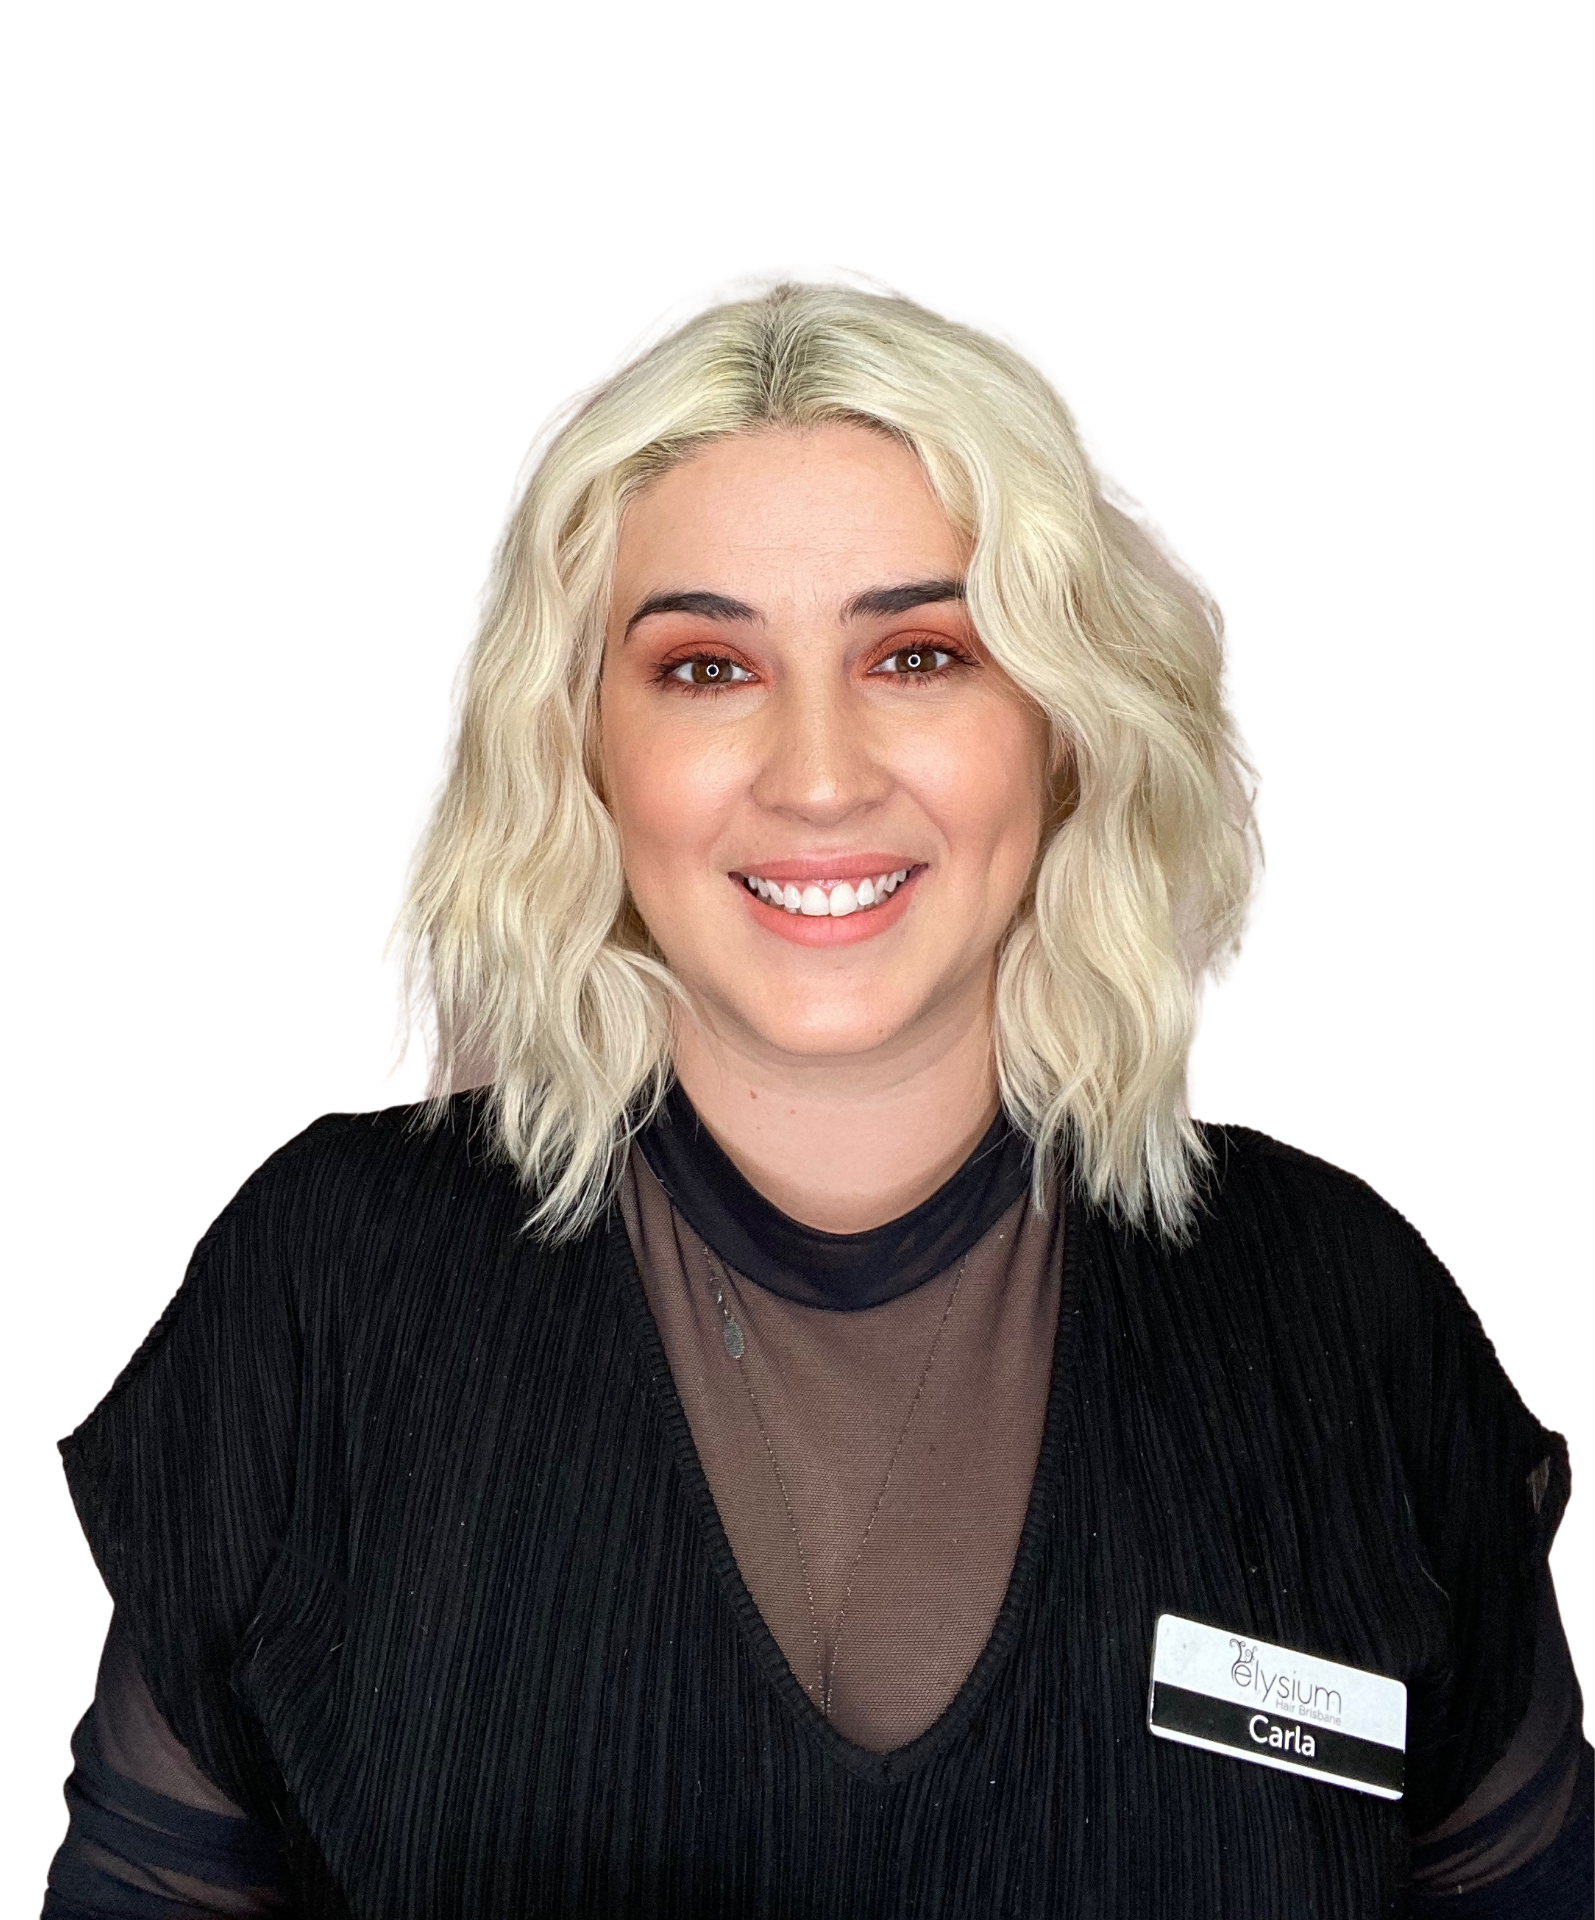 Carla Elysium Hair Brisbane Lead Stylist